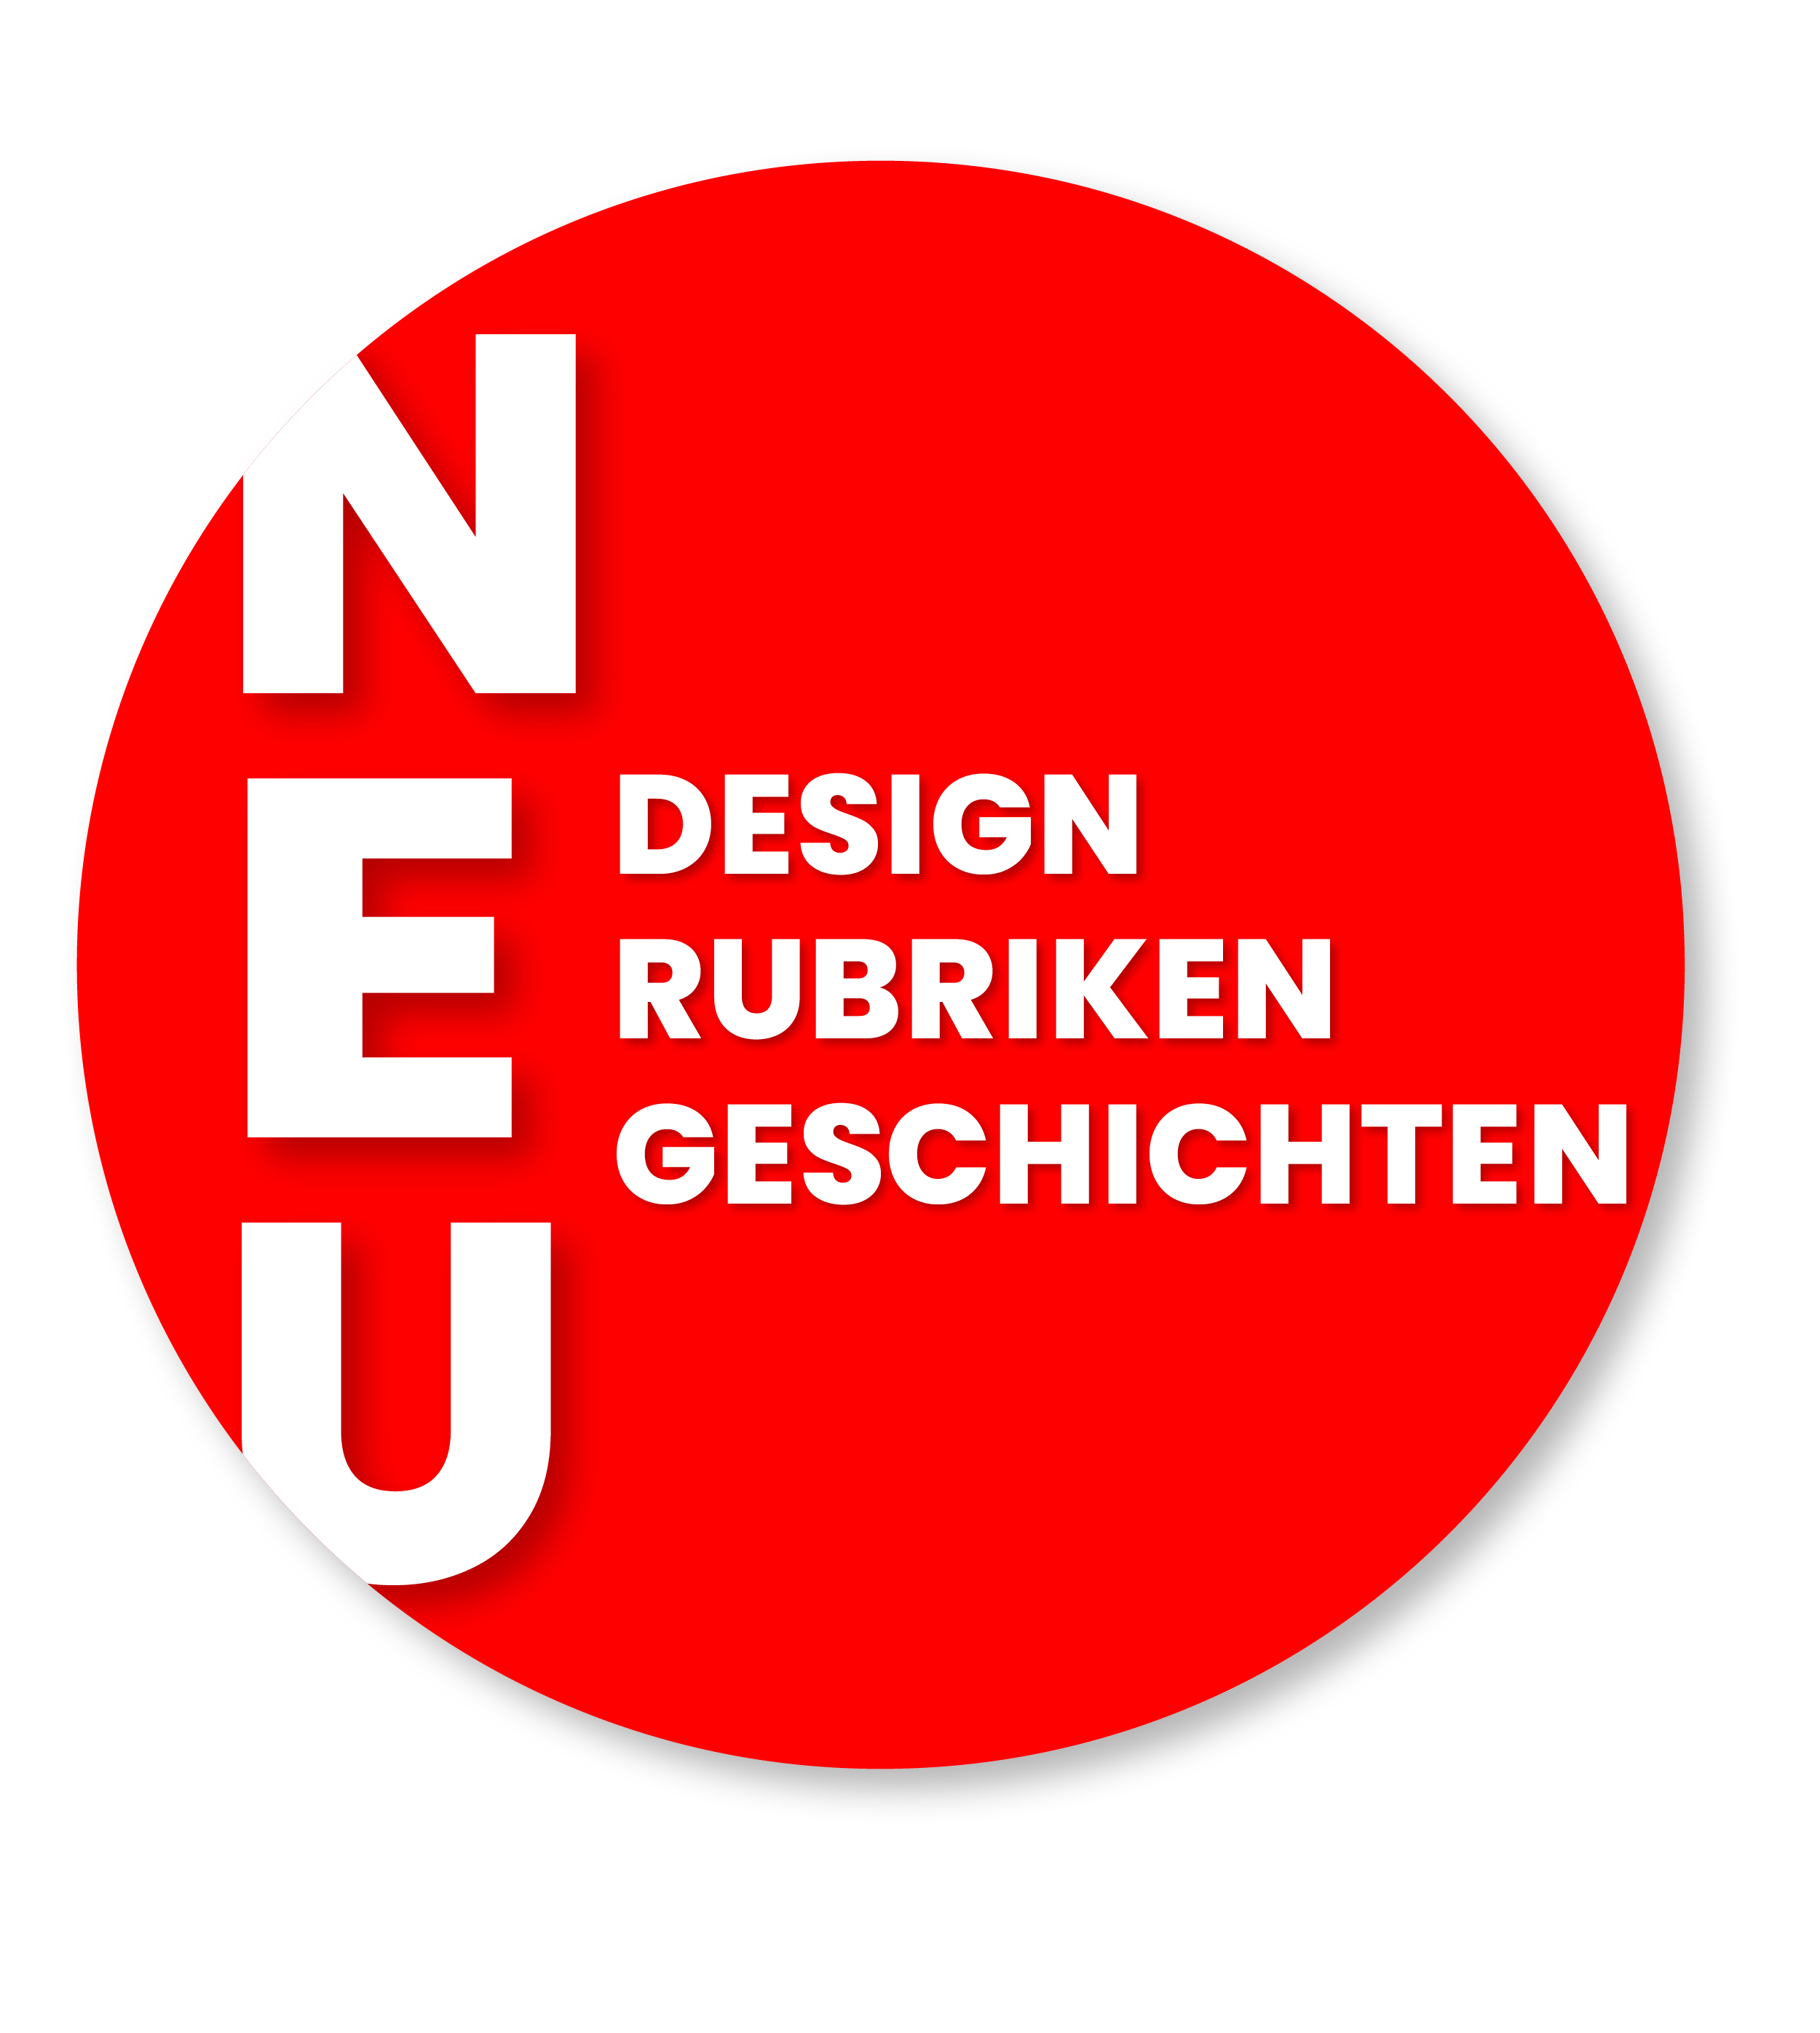 Excudit - Kulturmagazin für Nürnberg - Button neues Design